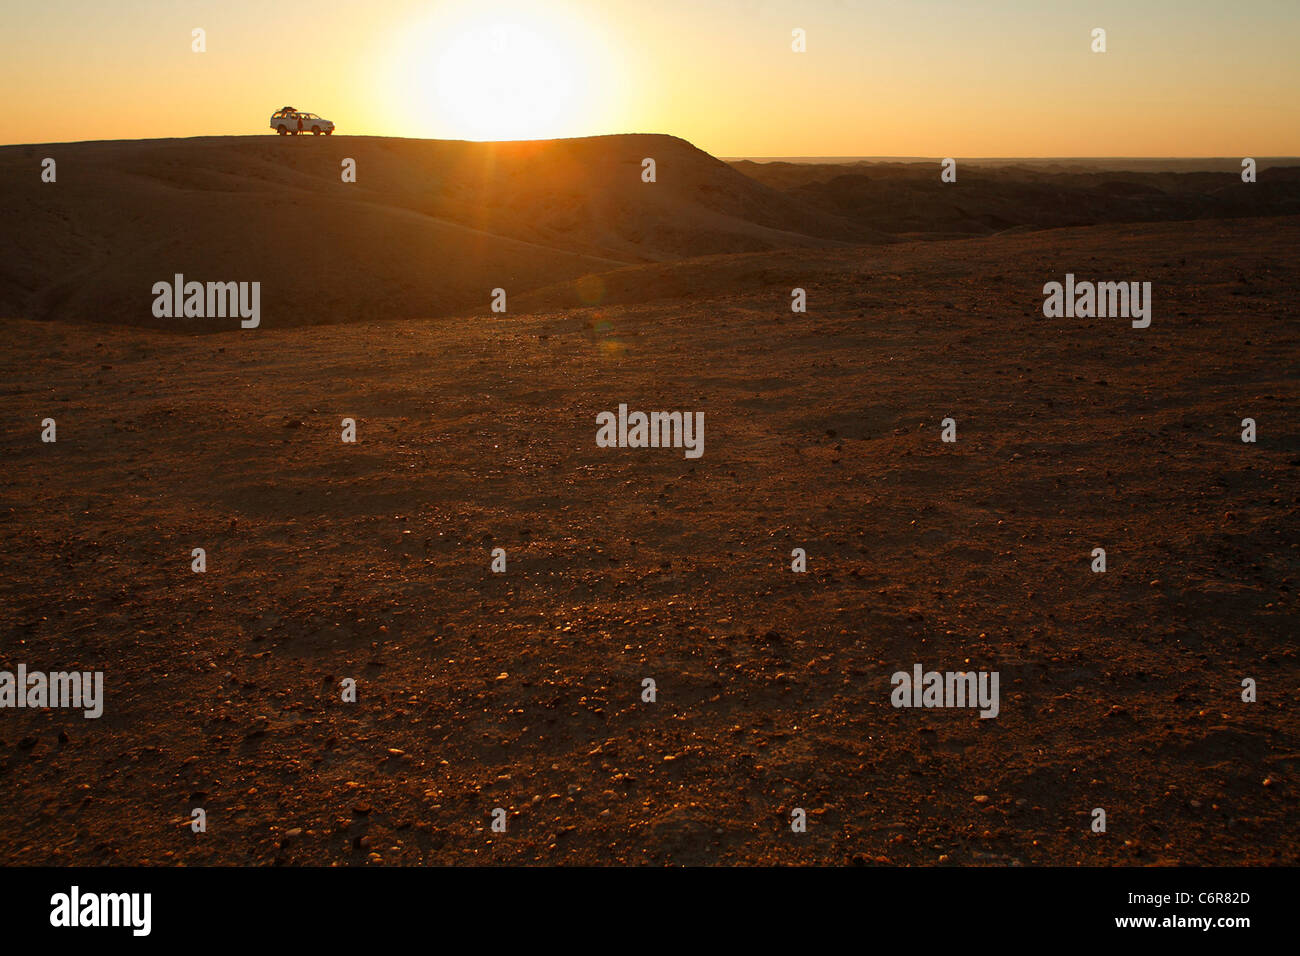 Paysage désertique avec véhicule isolé sur une crête dans la distance au crépuscule Banque D'Images